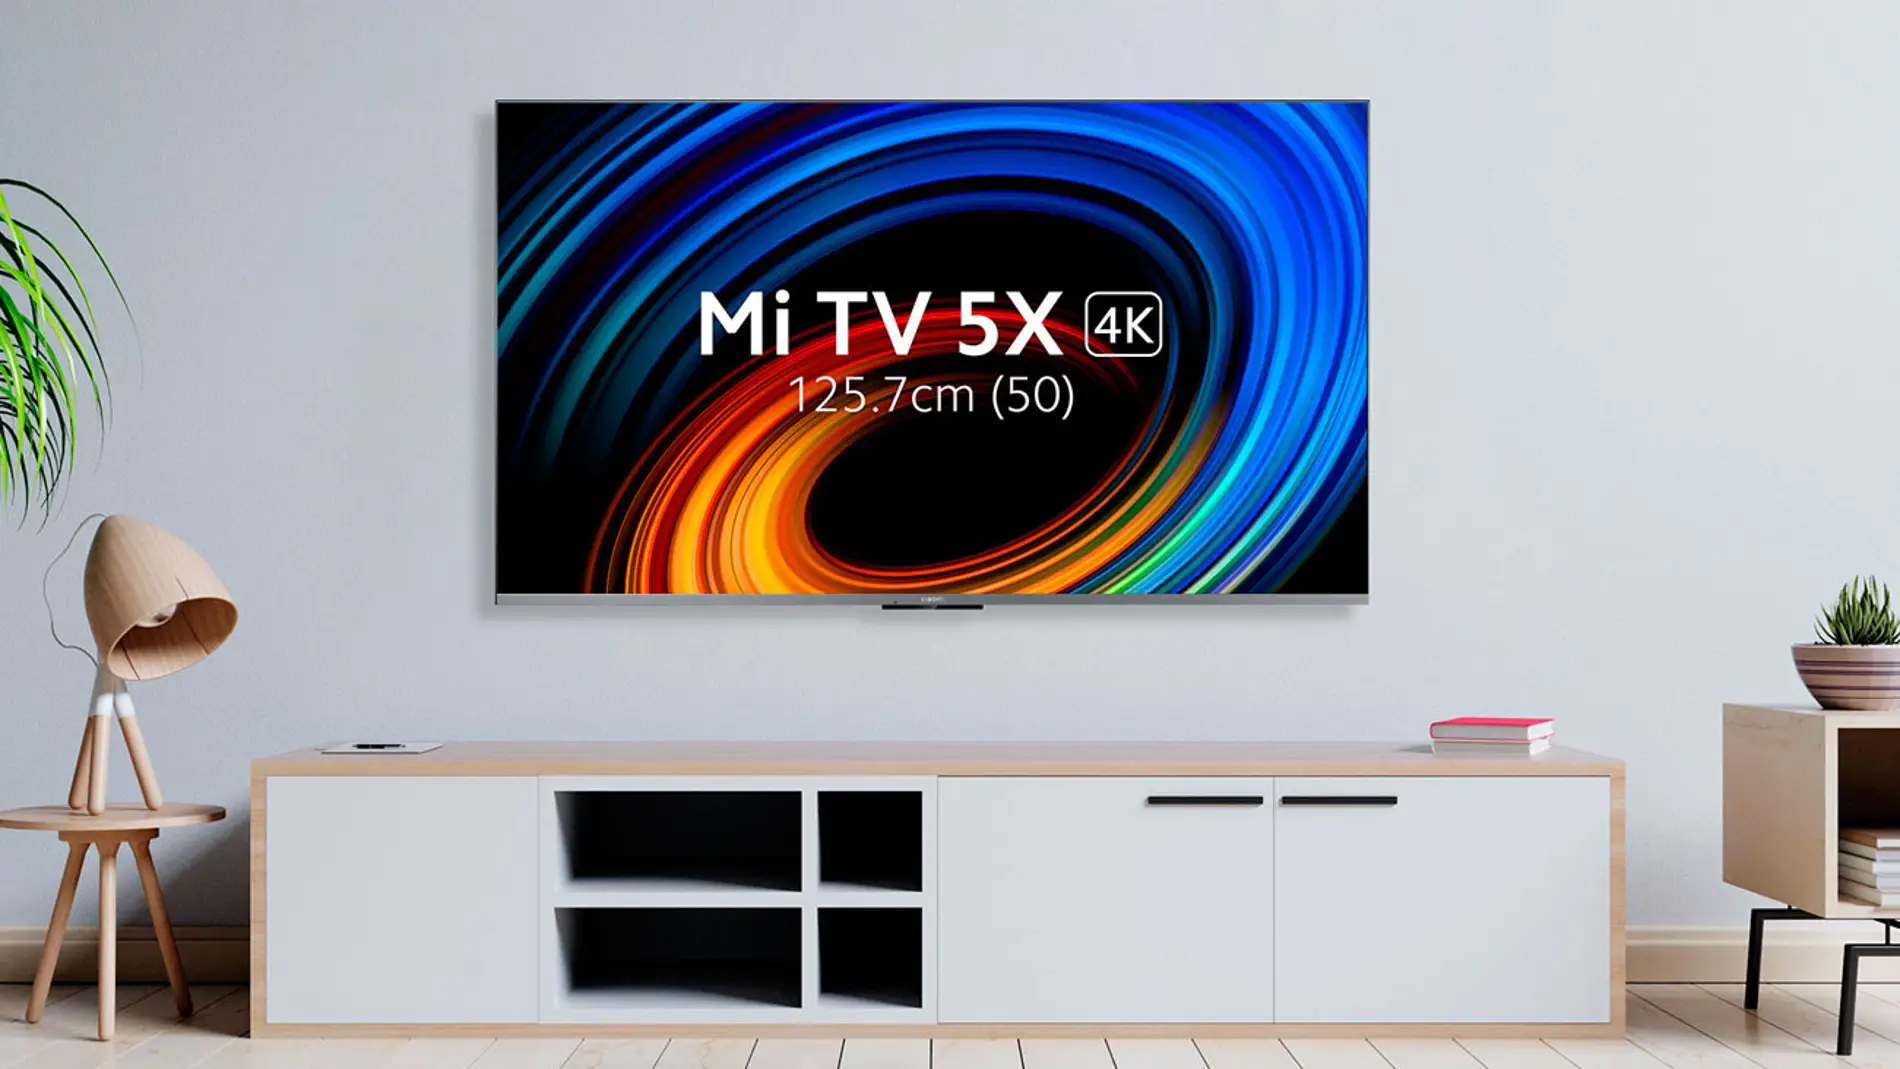 Nuevas Xiaomi Mi TV 5X, las Smart TV más económicas de la marca